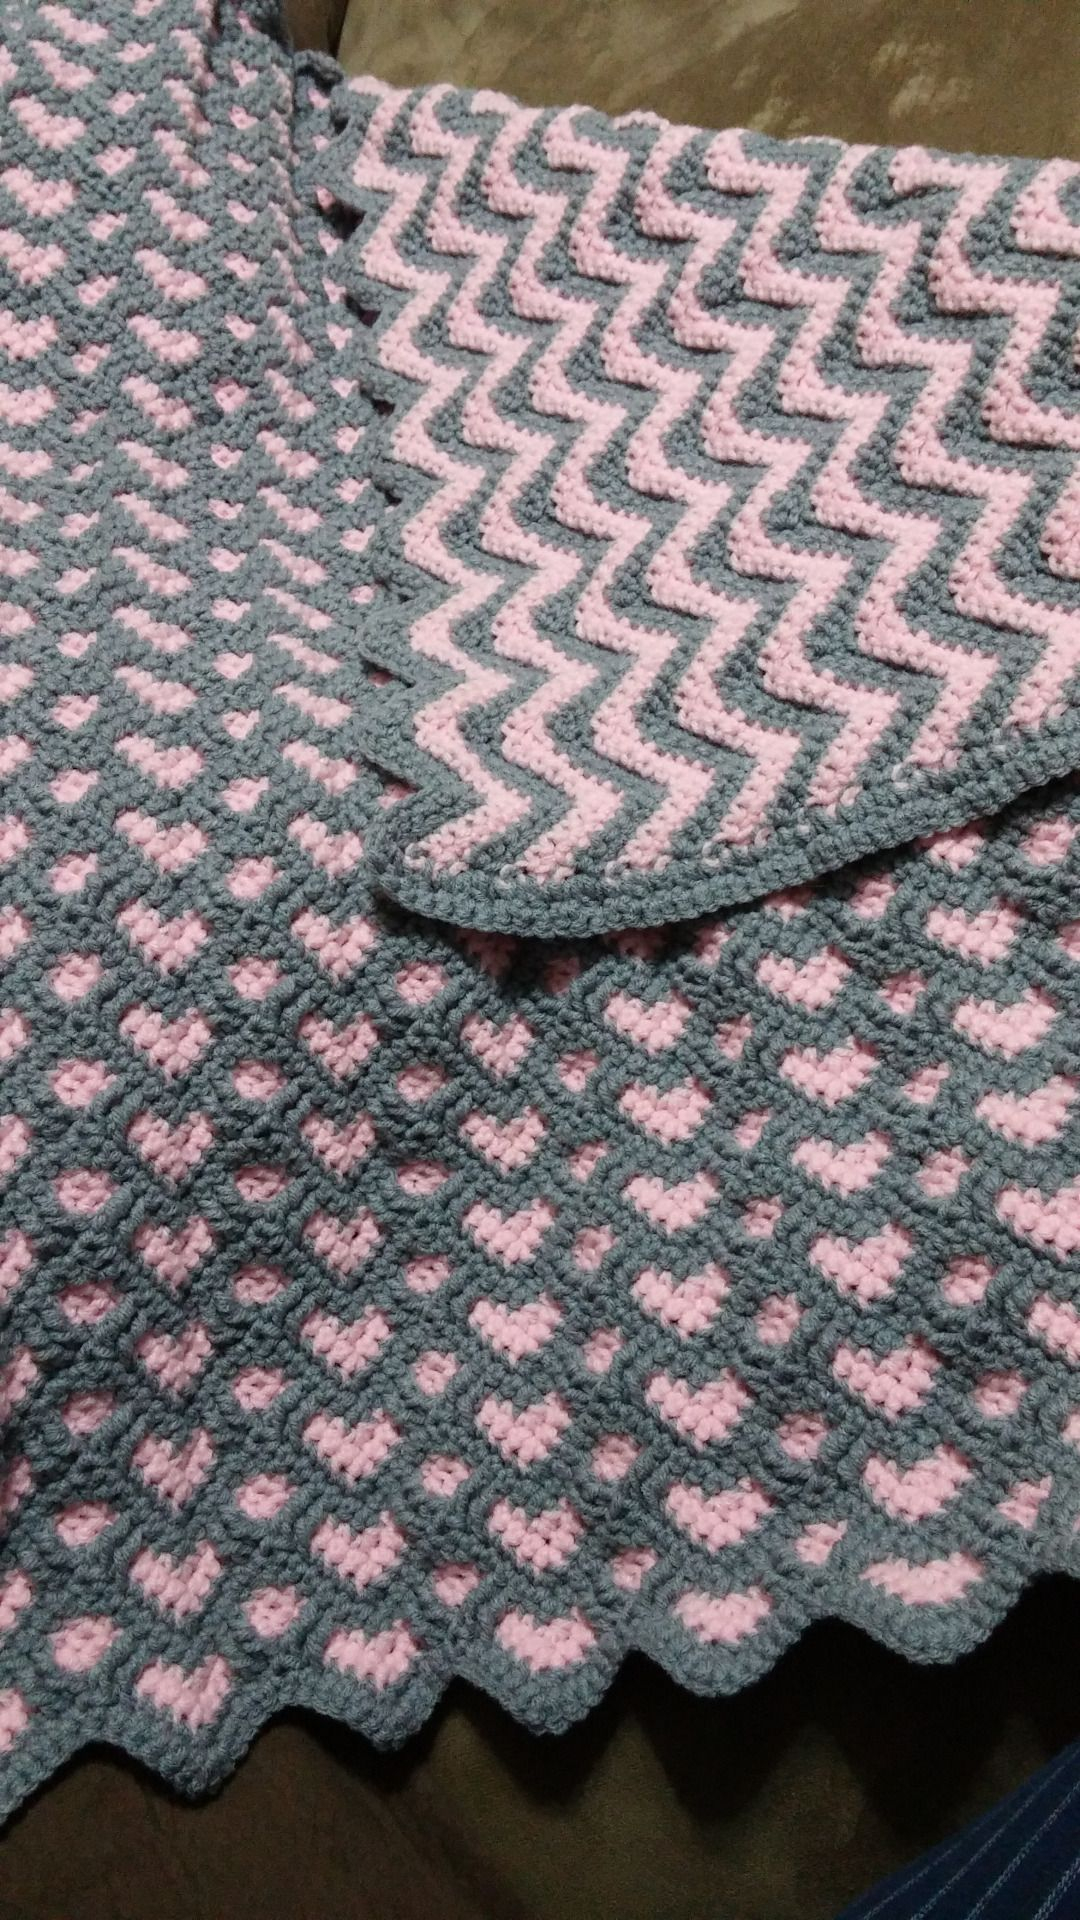 Chevron Crochet Baby Blanket Pattern Pin Joanne Barrier On Stuff To Try Crochet Crochet Patterns